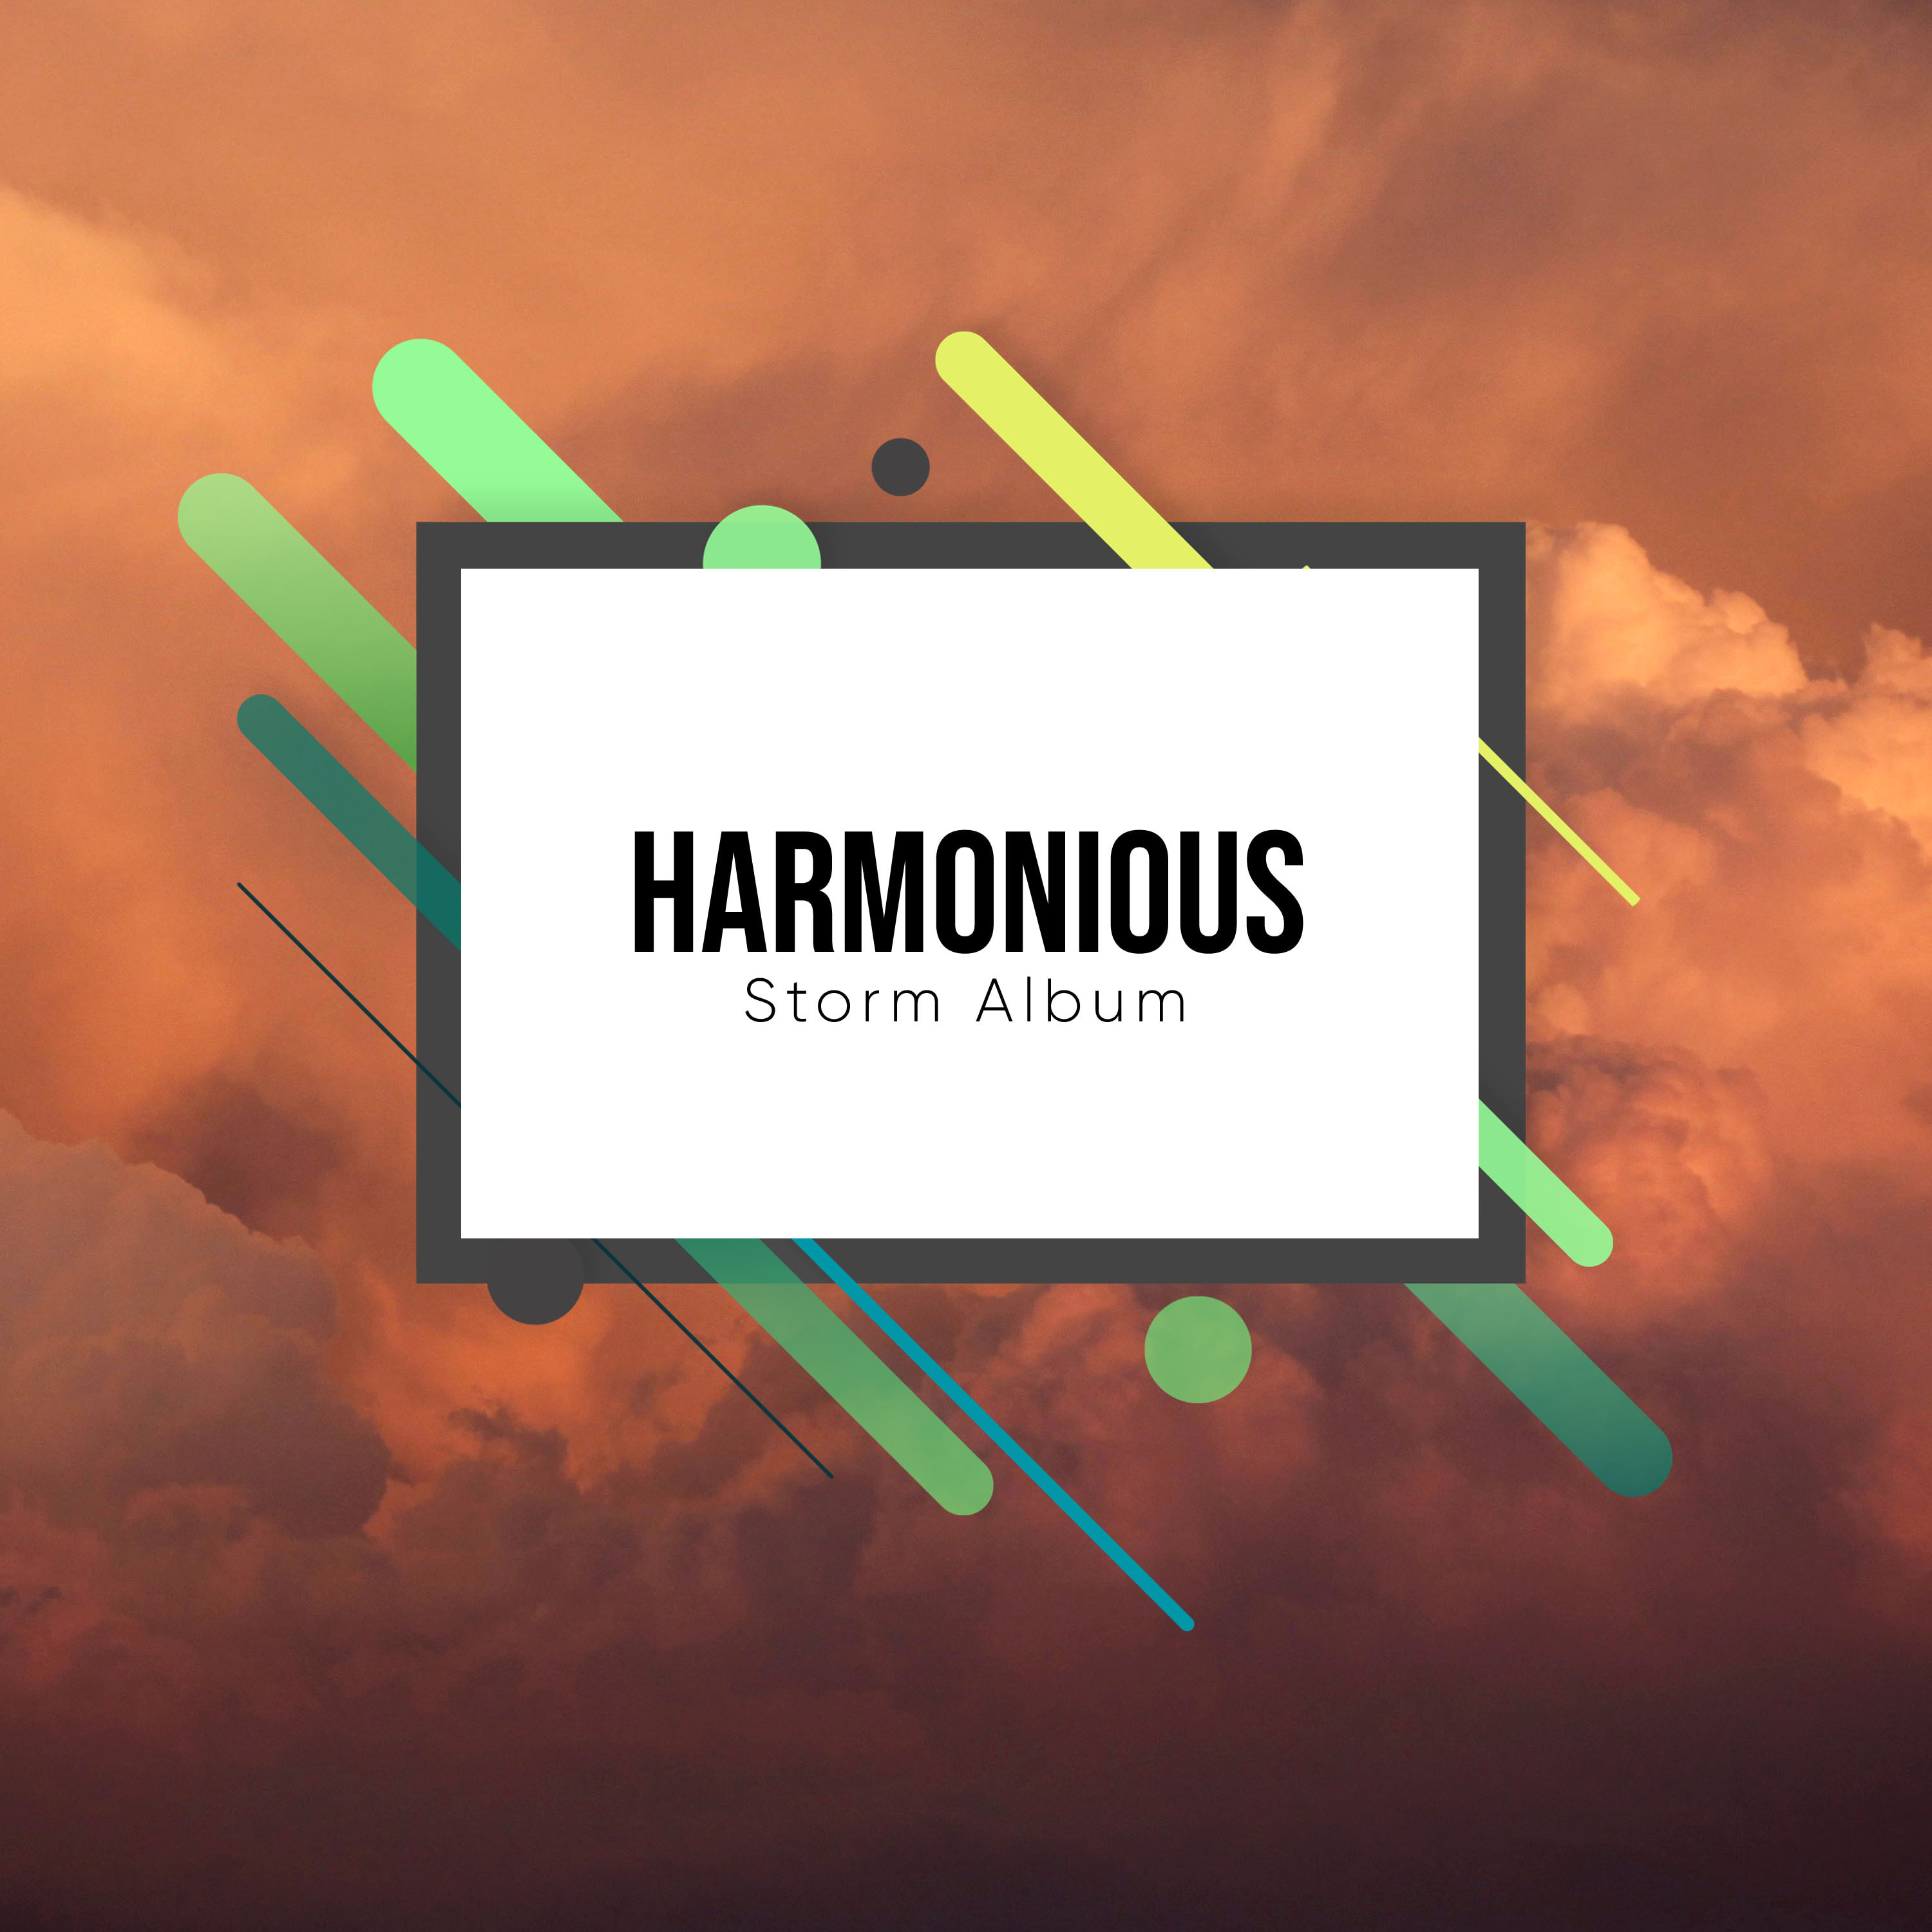 #11 Harmonious Storm Album